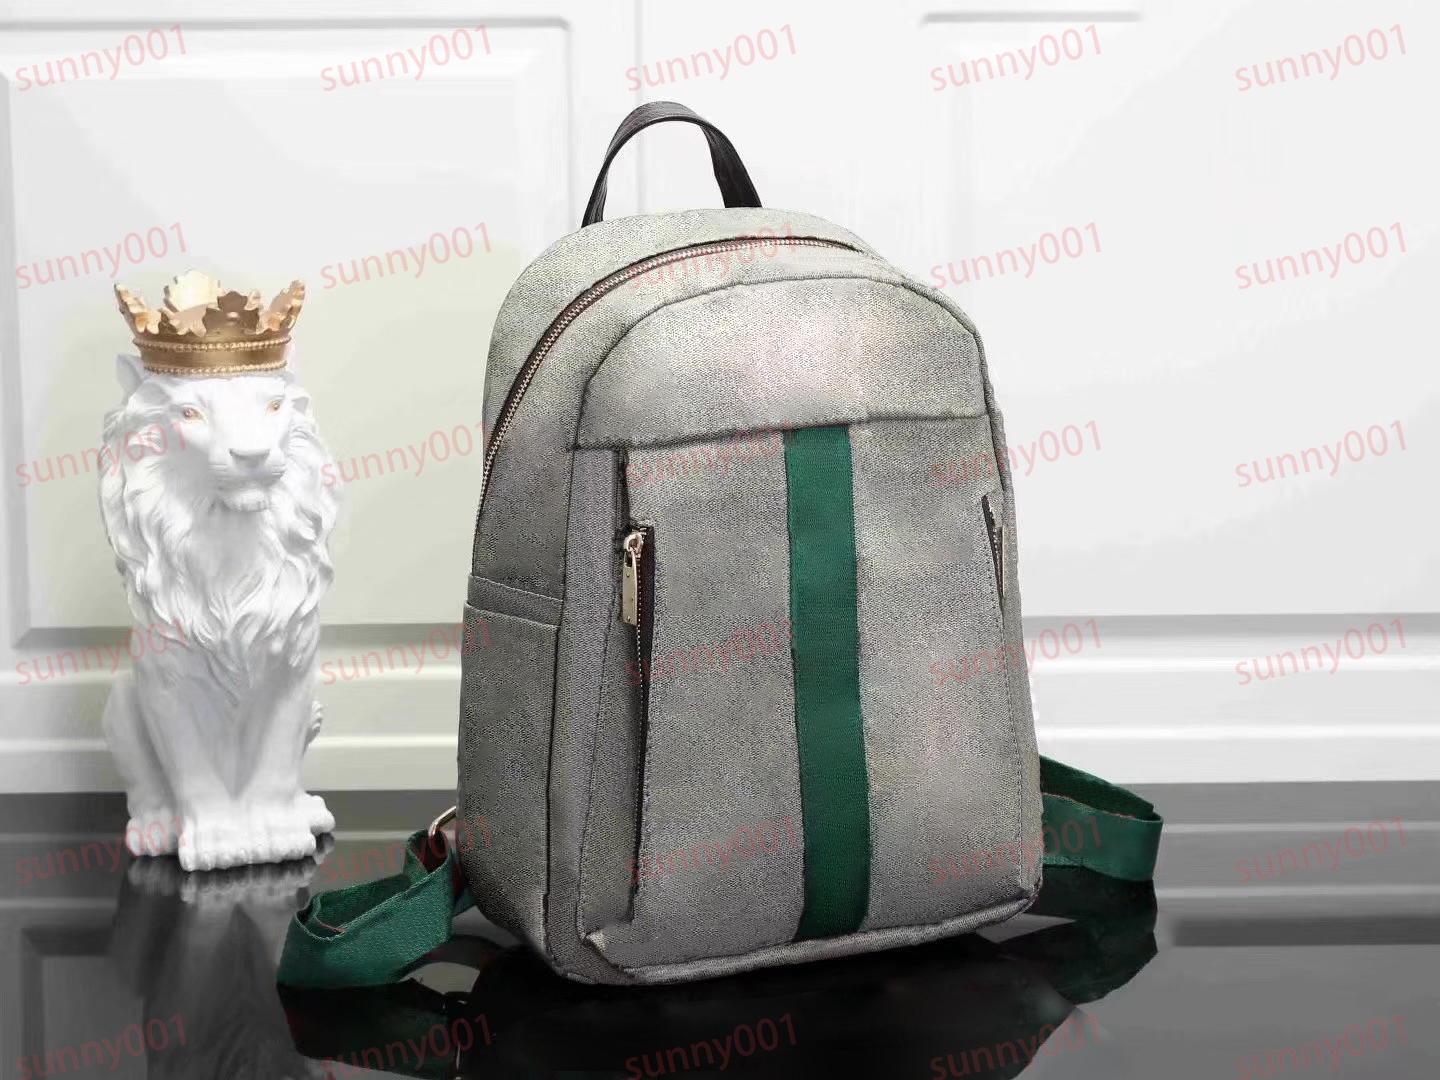 Portable Backpacks Double Shoulder Style Fashion Bags Luxury Student Schoolbag Designer Travel Knapsack Zipper Side Pocket Design